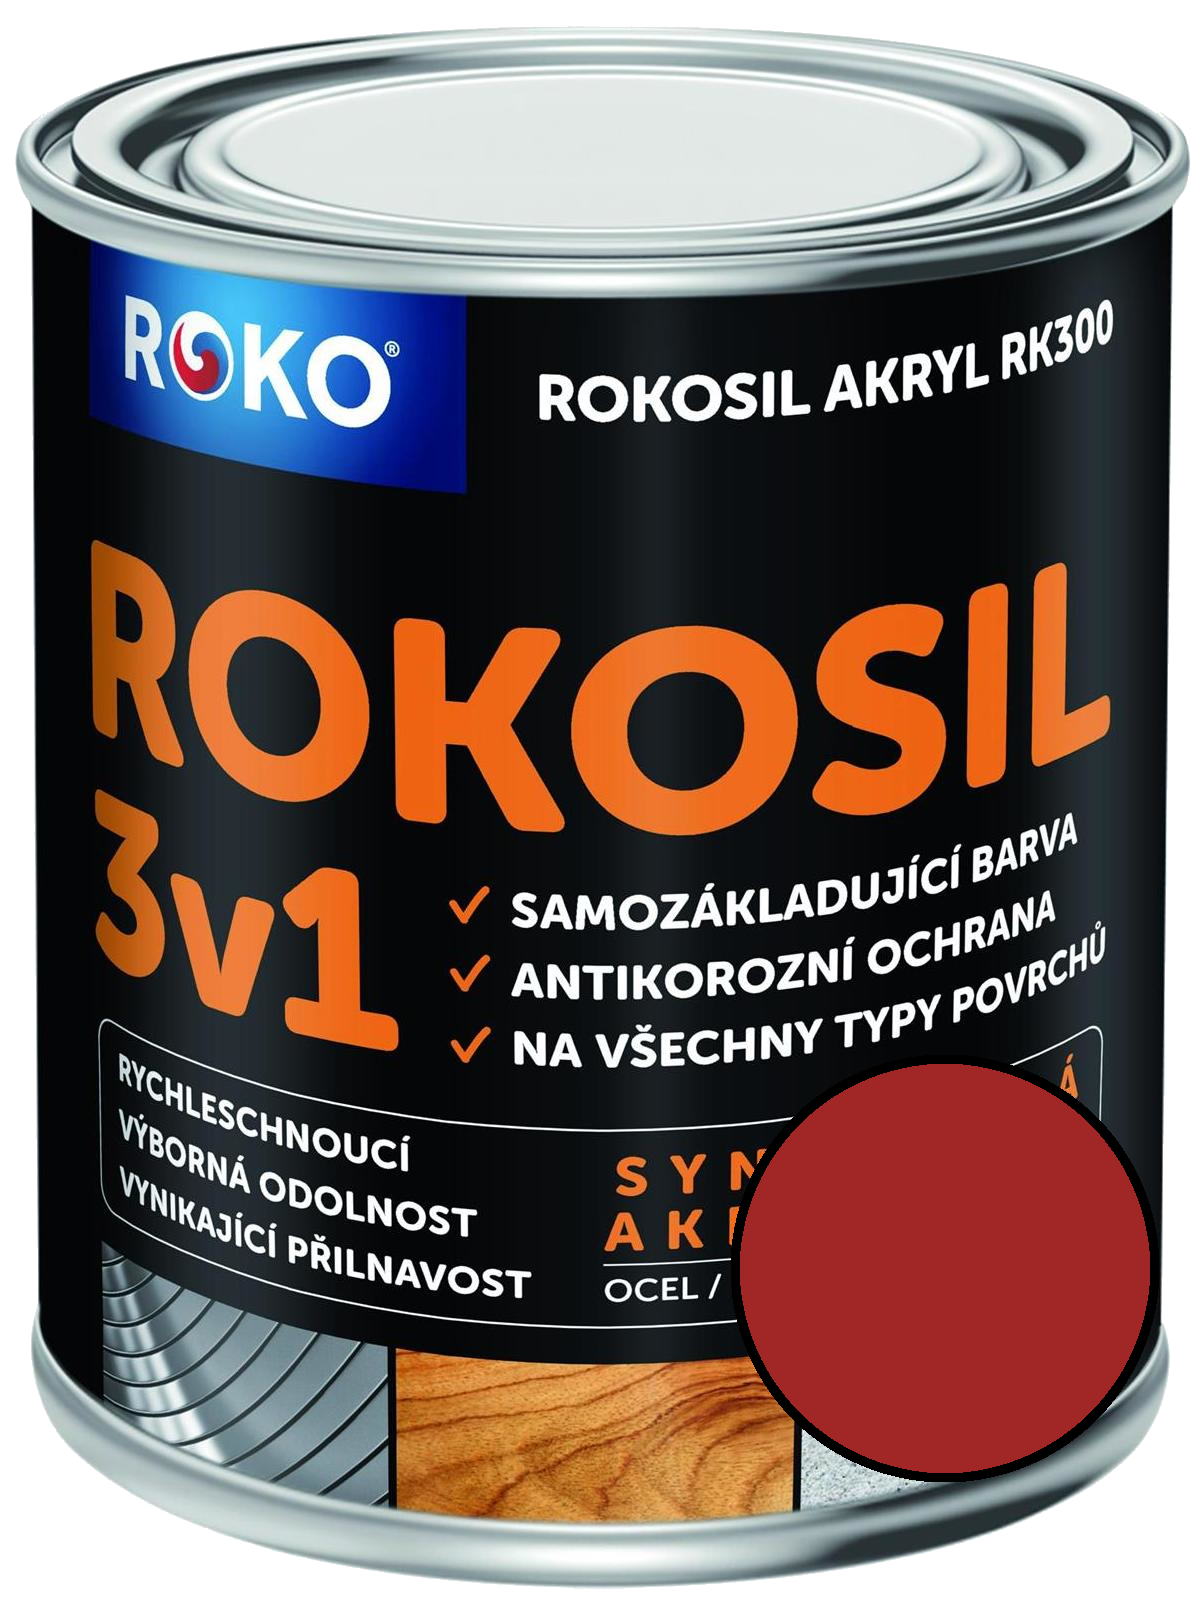 Barva samozákladující Rokosil akryl 3v1 RK 300 8190 červená tmavá